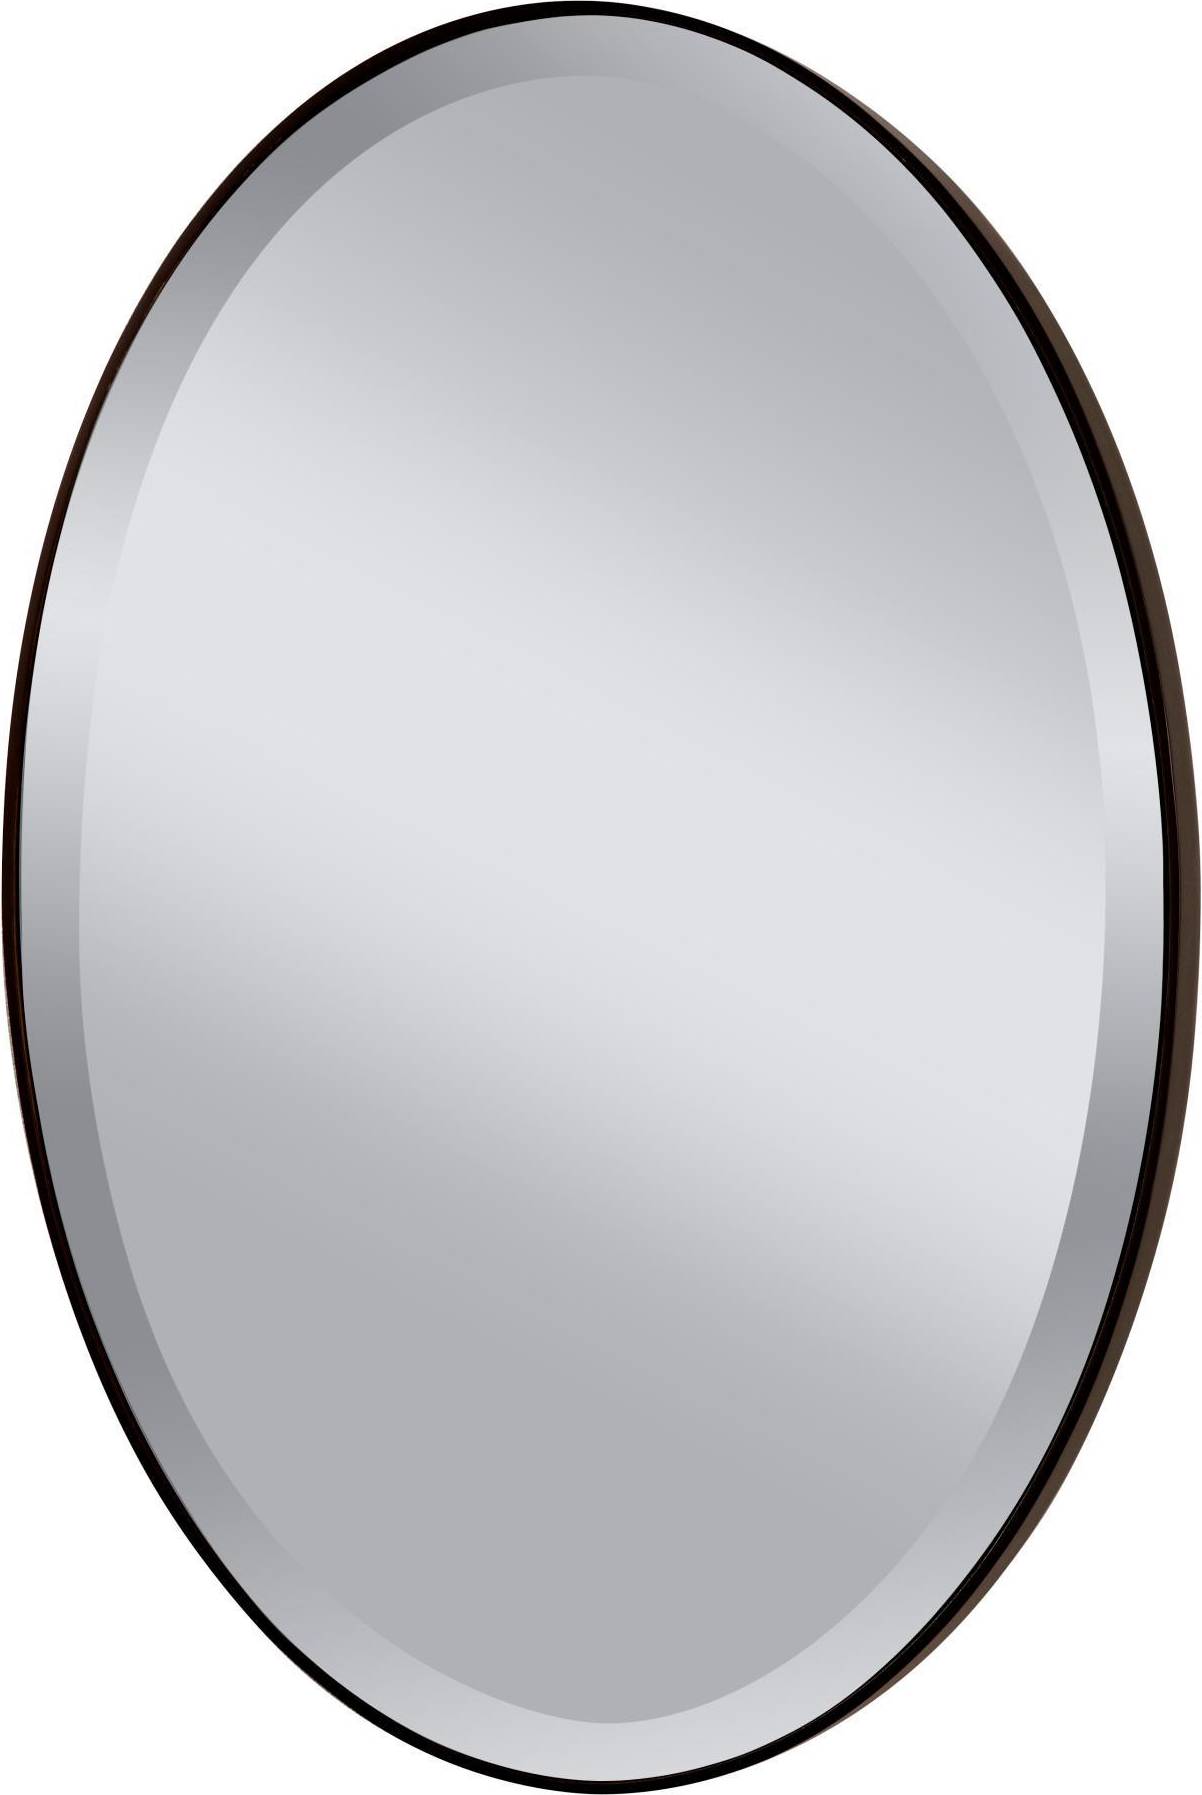  Bild på FEISS Johnson Oval Wall mirror spegel